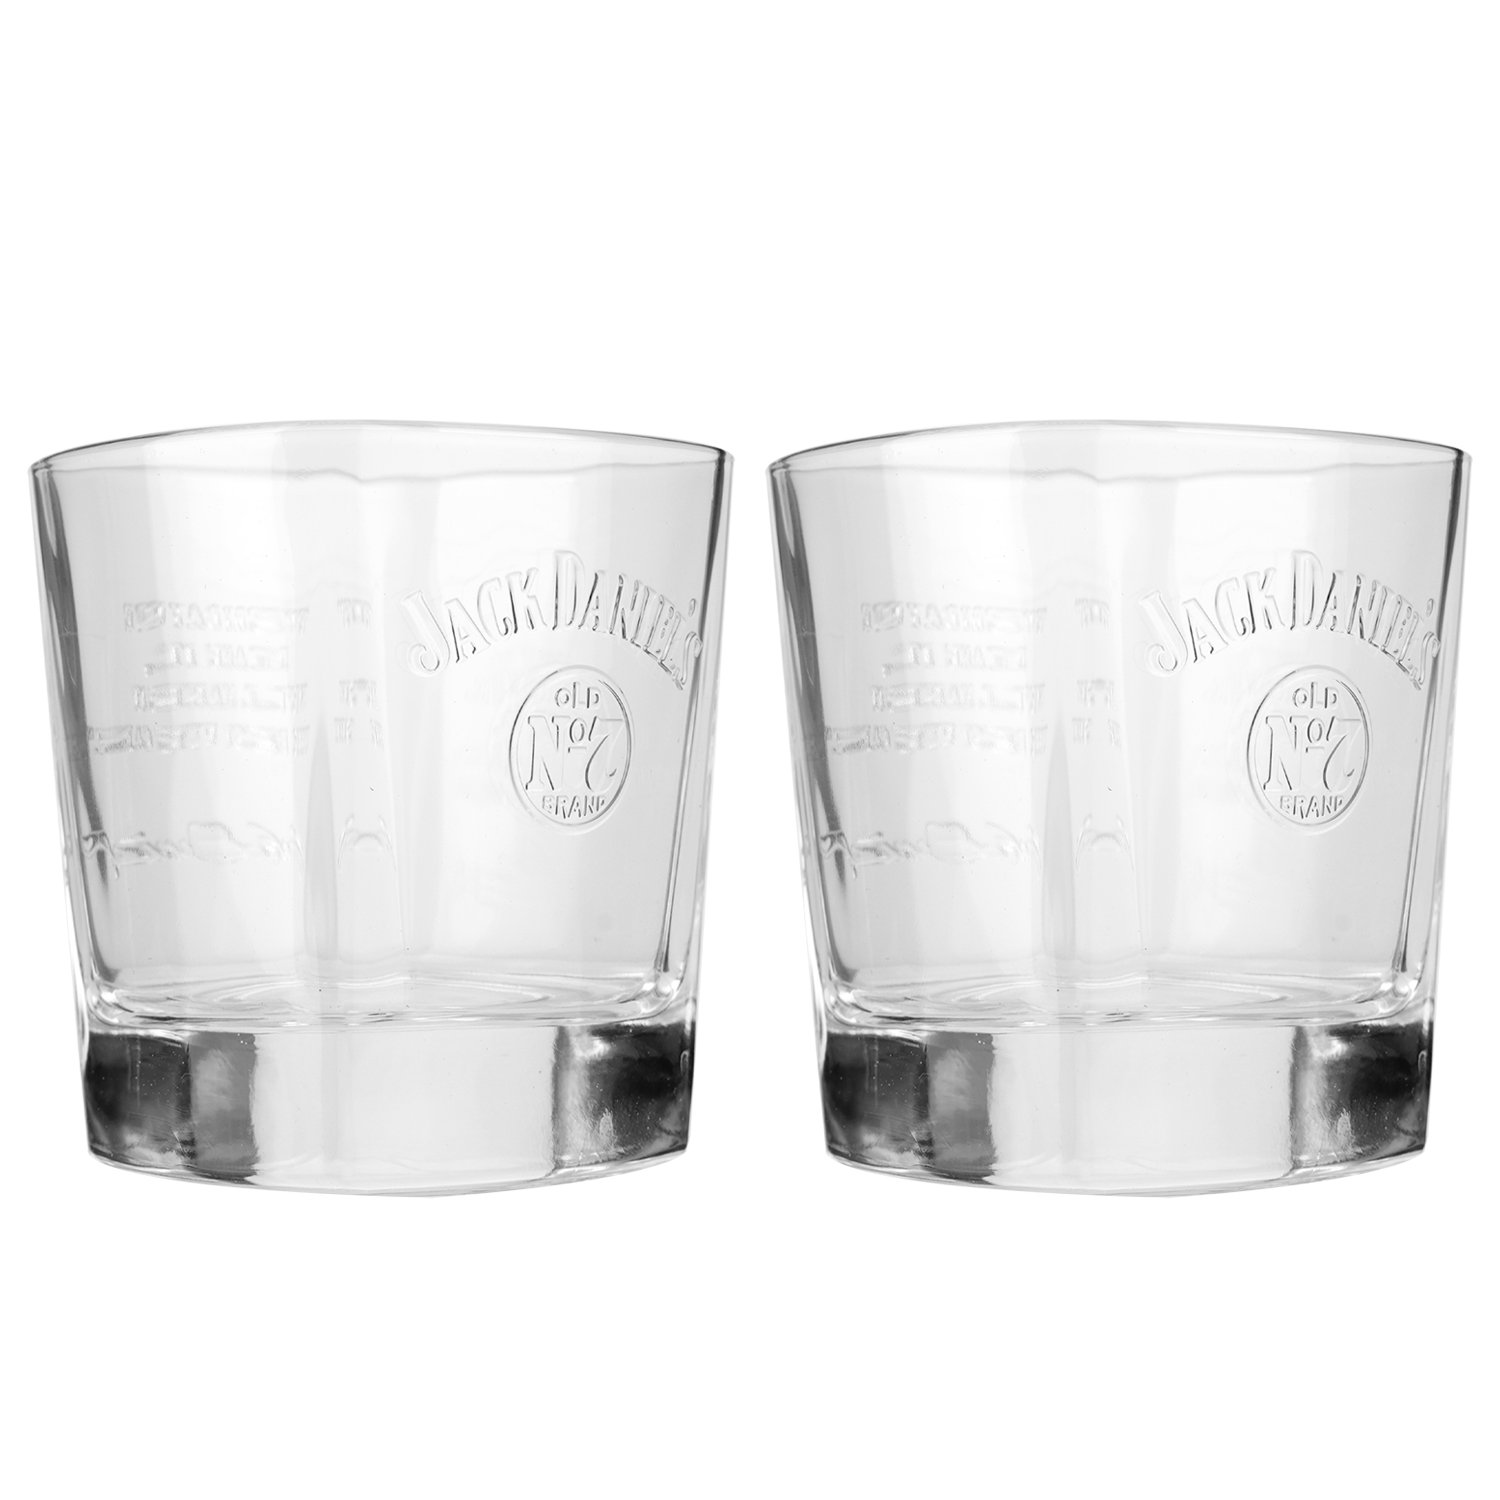 Виски Jack Daniel's Tennessee Old No.7 в металлической коробке с 2 бокалами, 40%, 0,7 л (419322) - фото 6